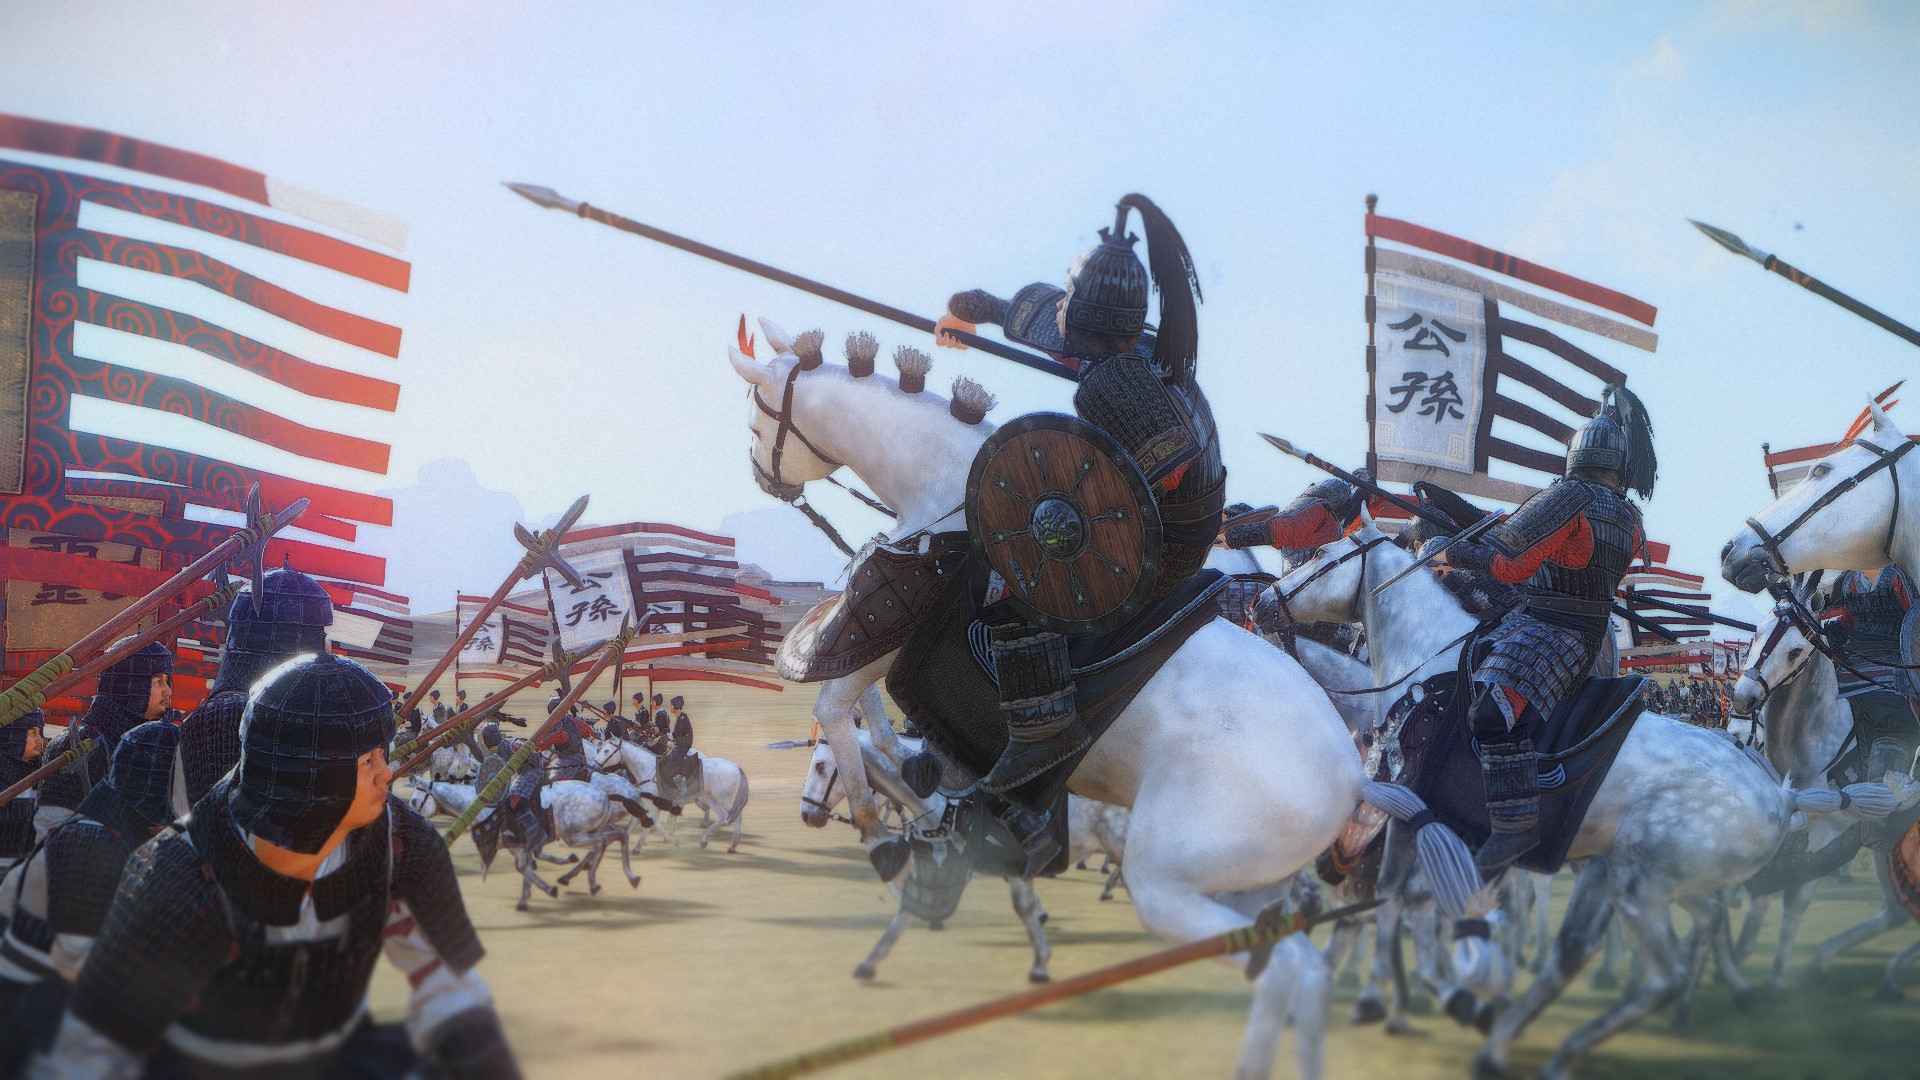 Total War: Best Total Conversion & Overhaul Mods